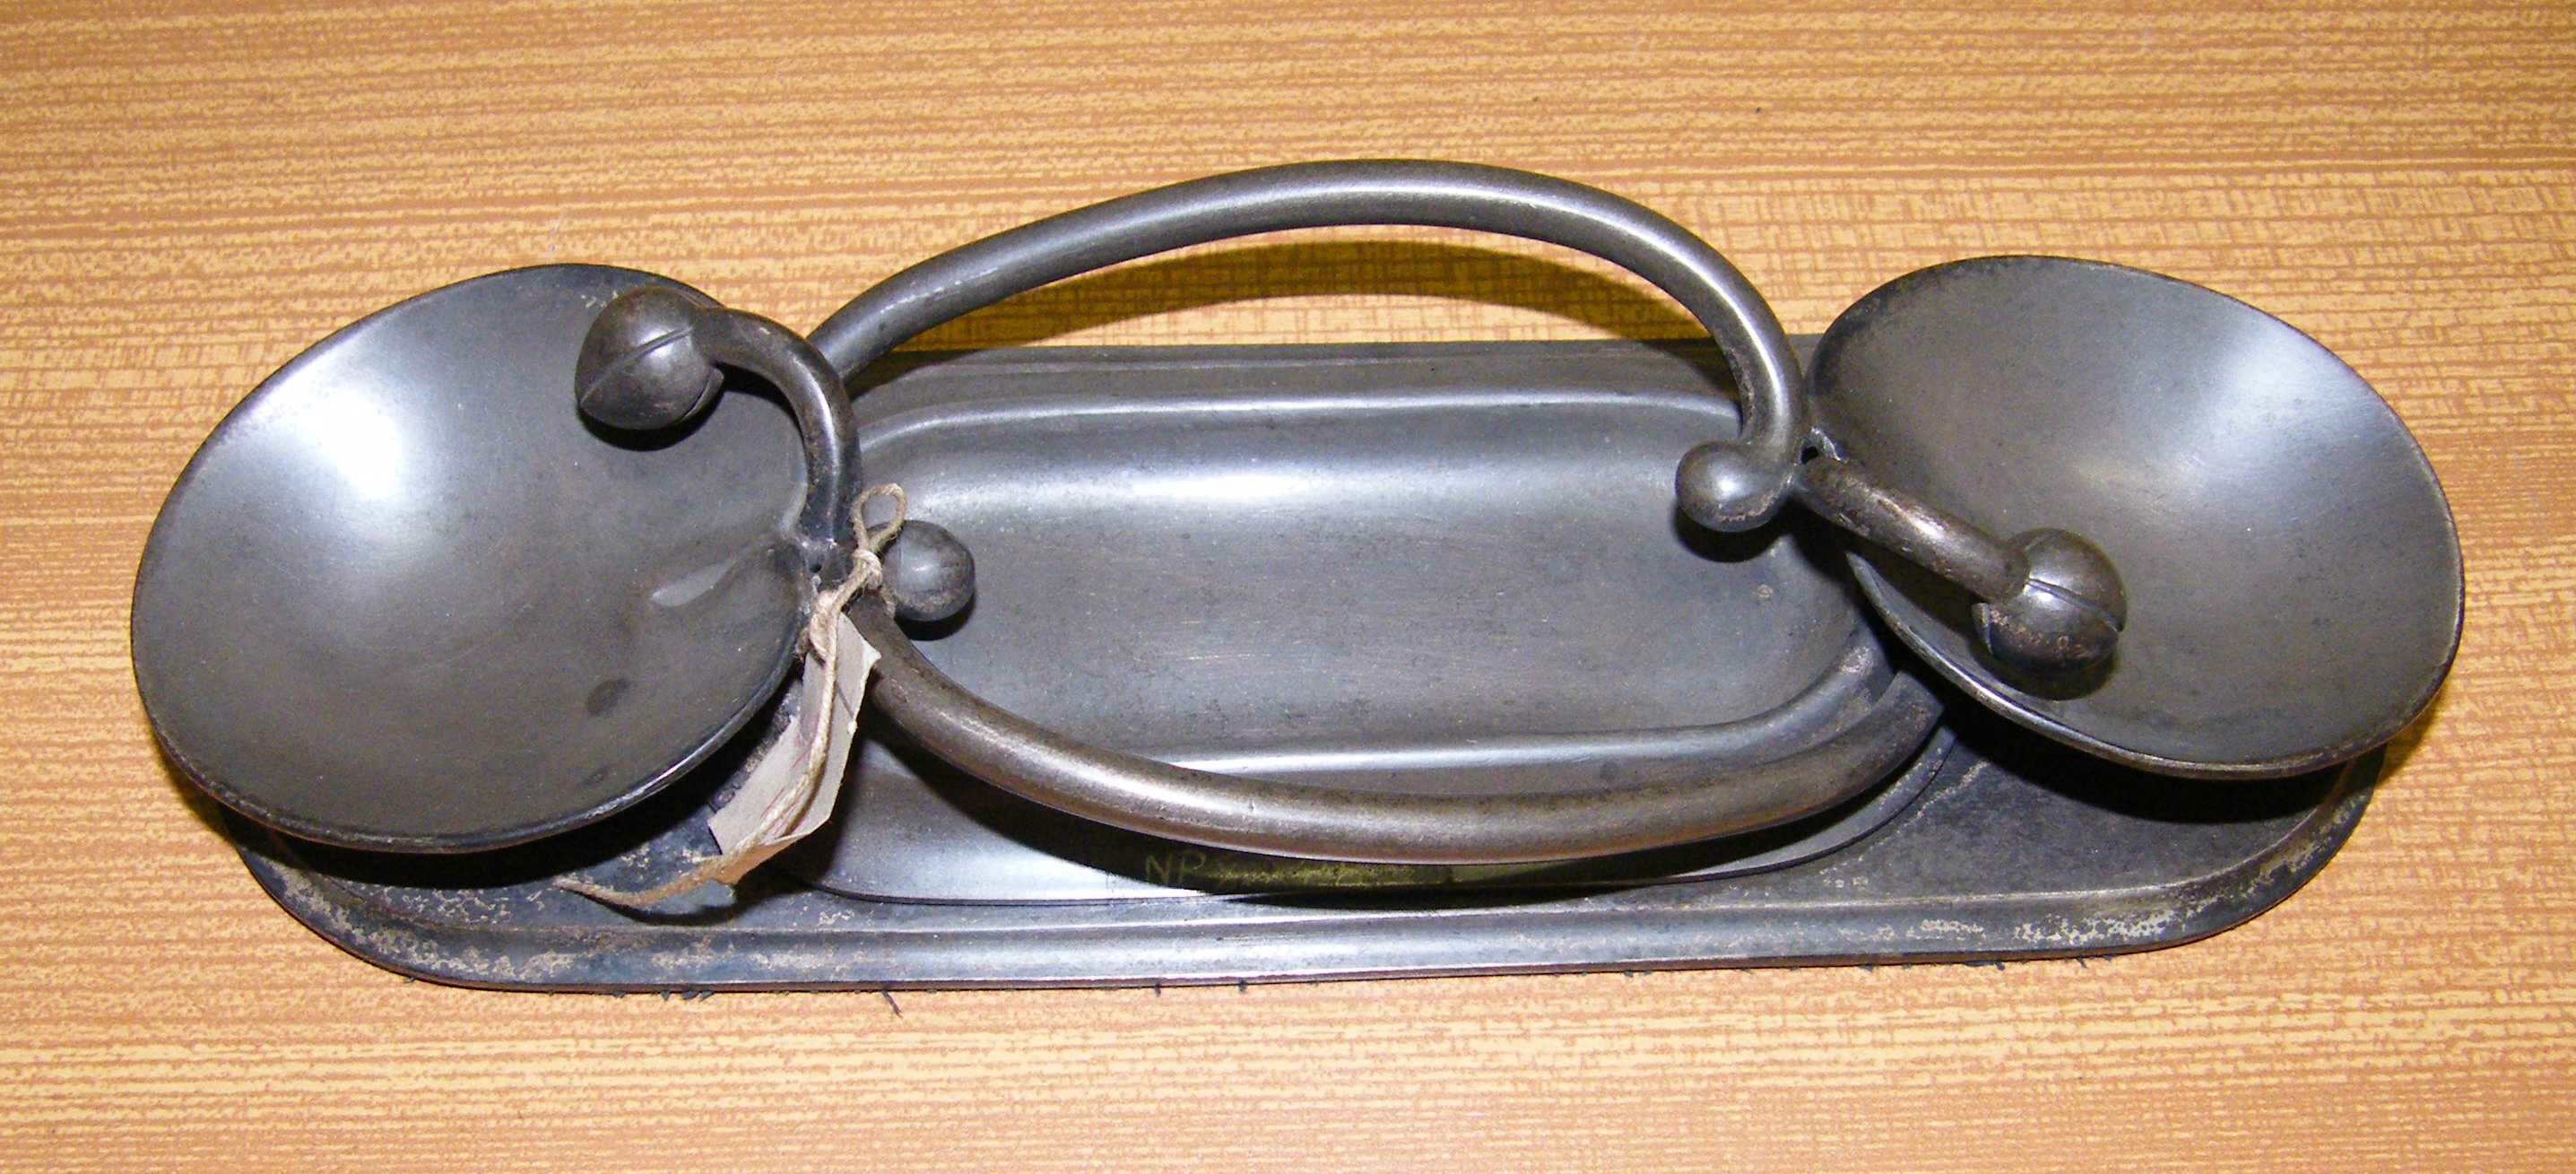 Schreibgeräte-Behältnis aus der Schreibgarnitur "Seerosen", X 198. (Stiftung Preußische Schlösser und Gärten Berlin-Brandenburg CC BY-NC-SA)